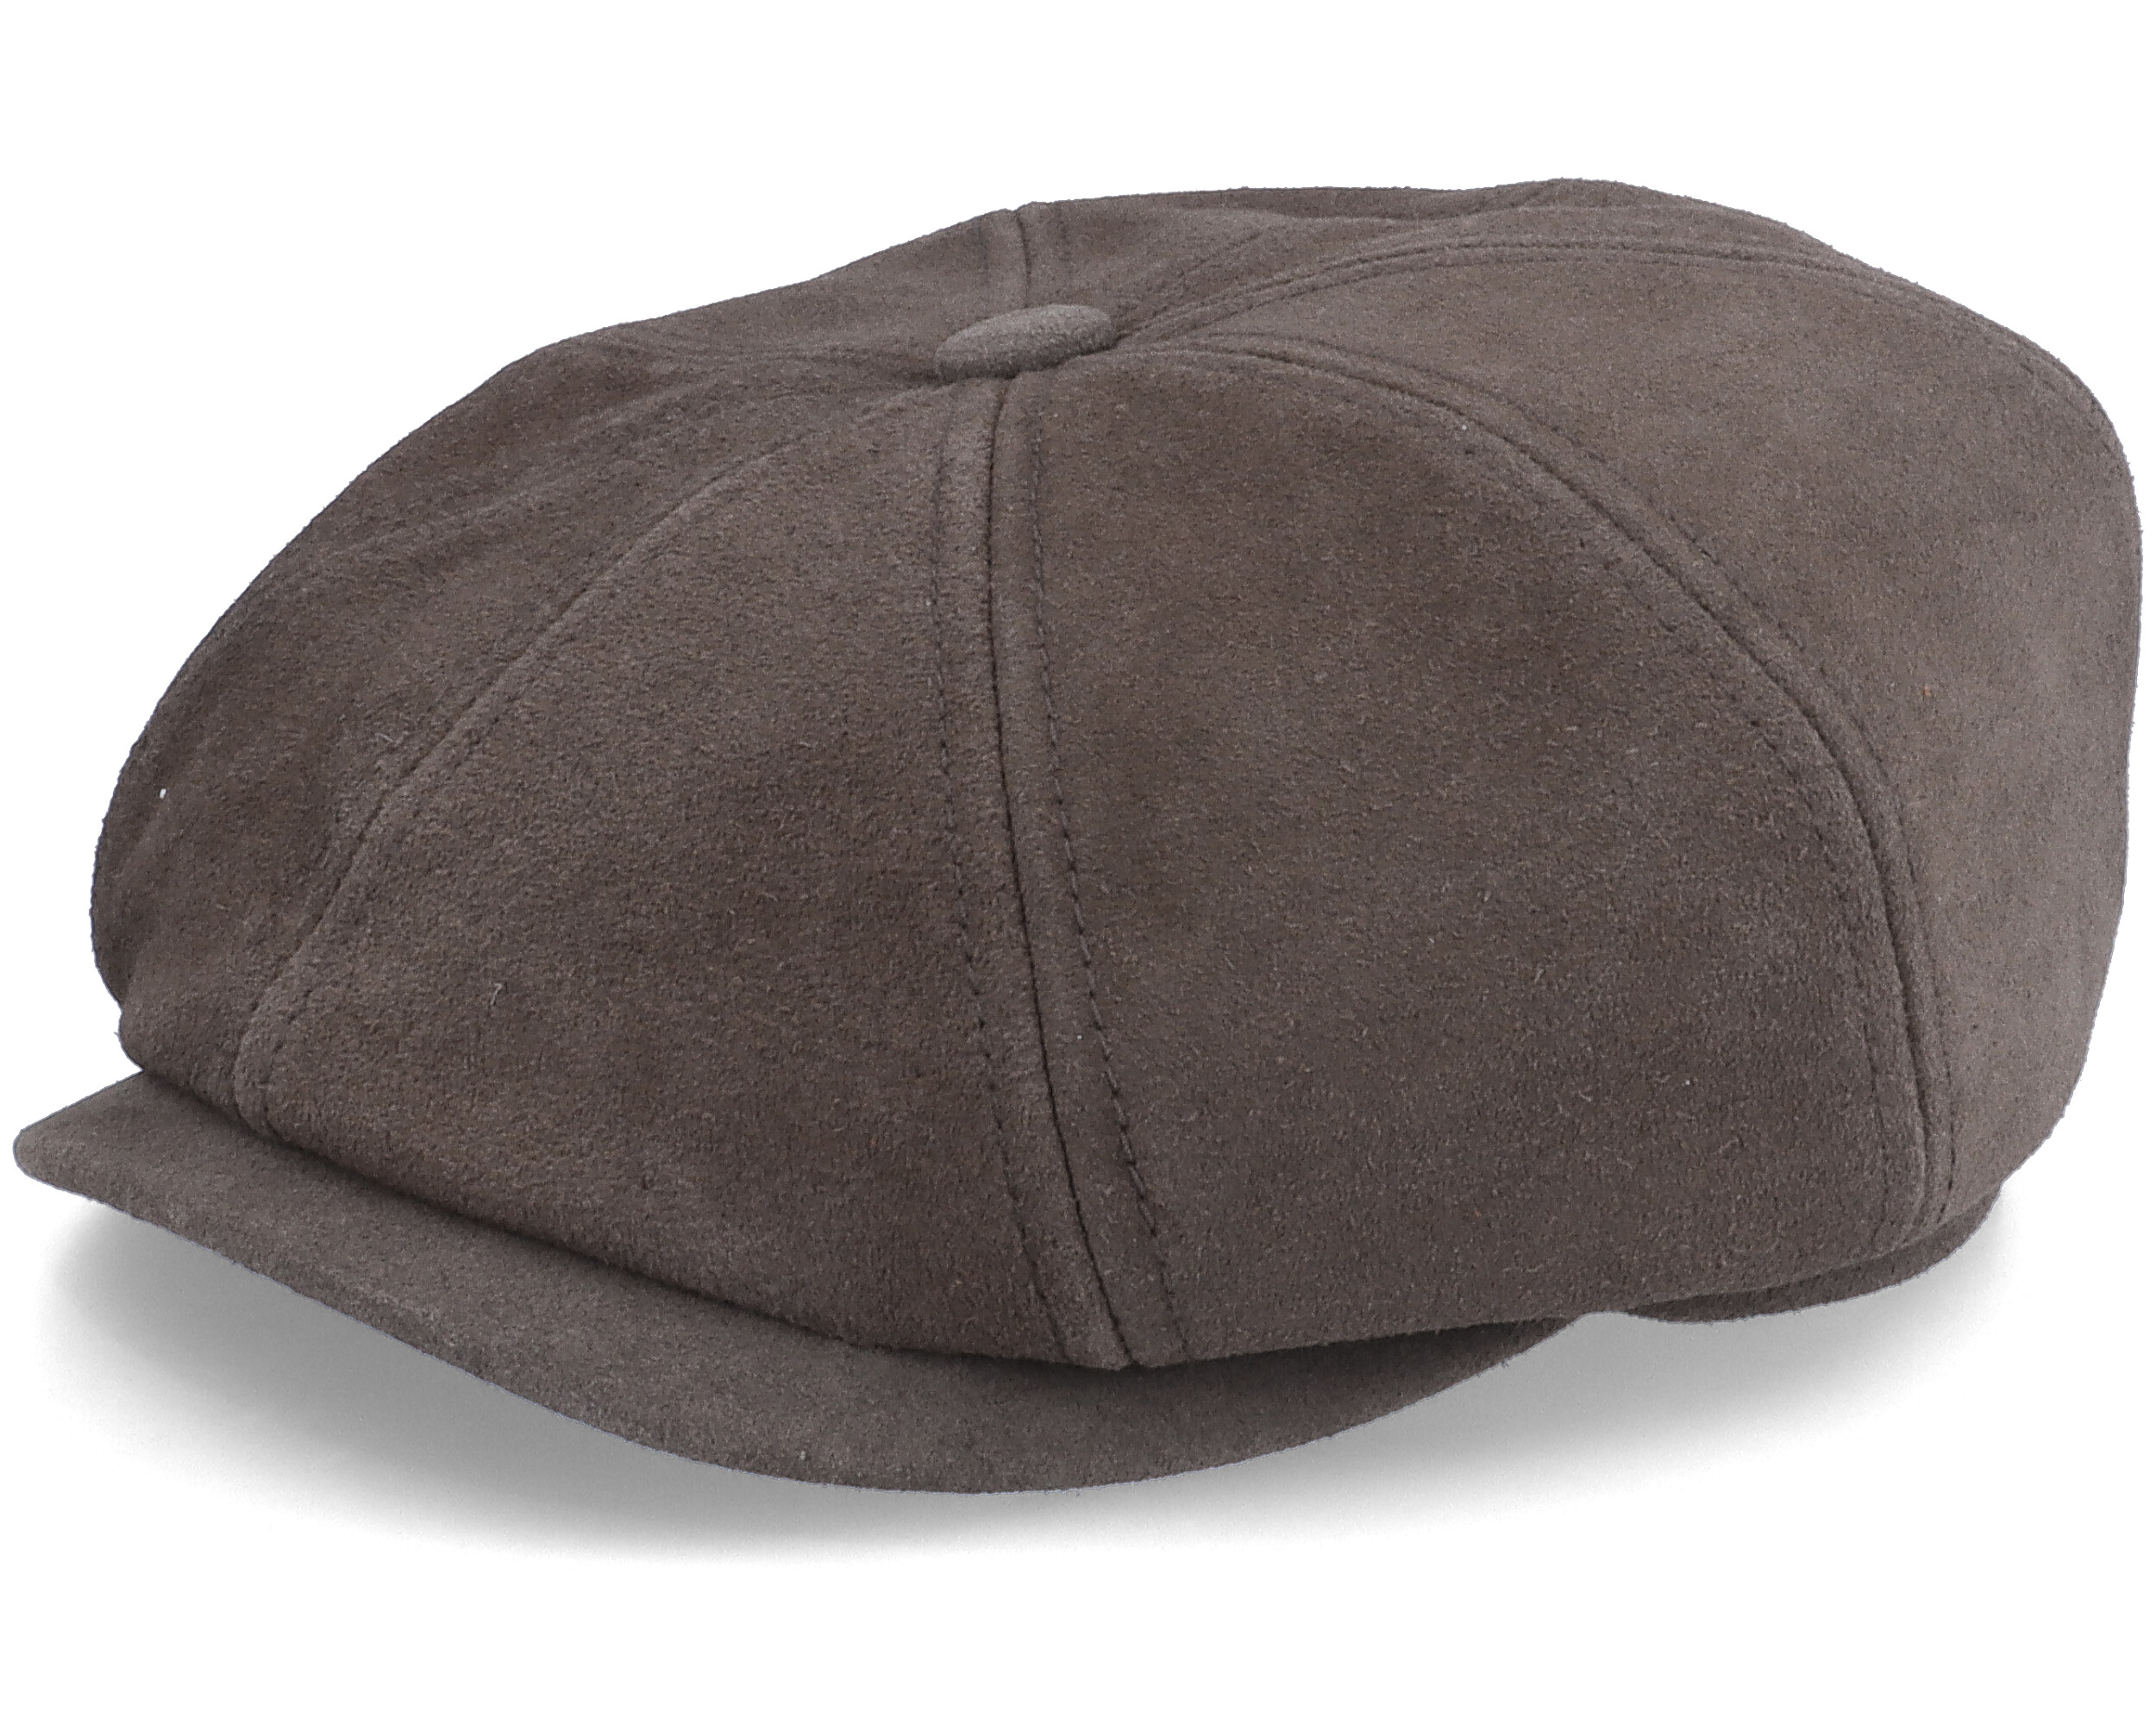 15481円 【税込】 Resistol HAT メンズ US サイズ: 7 1 4-7 3 8 カラー: ブラウン